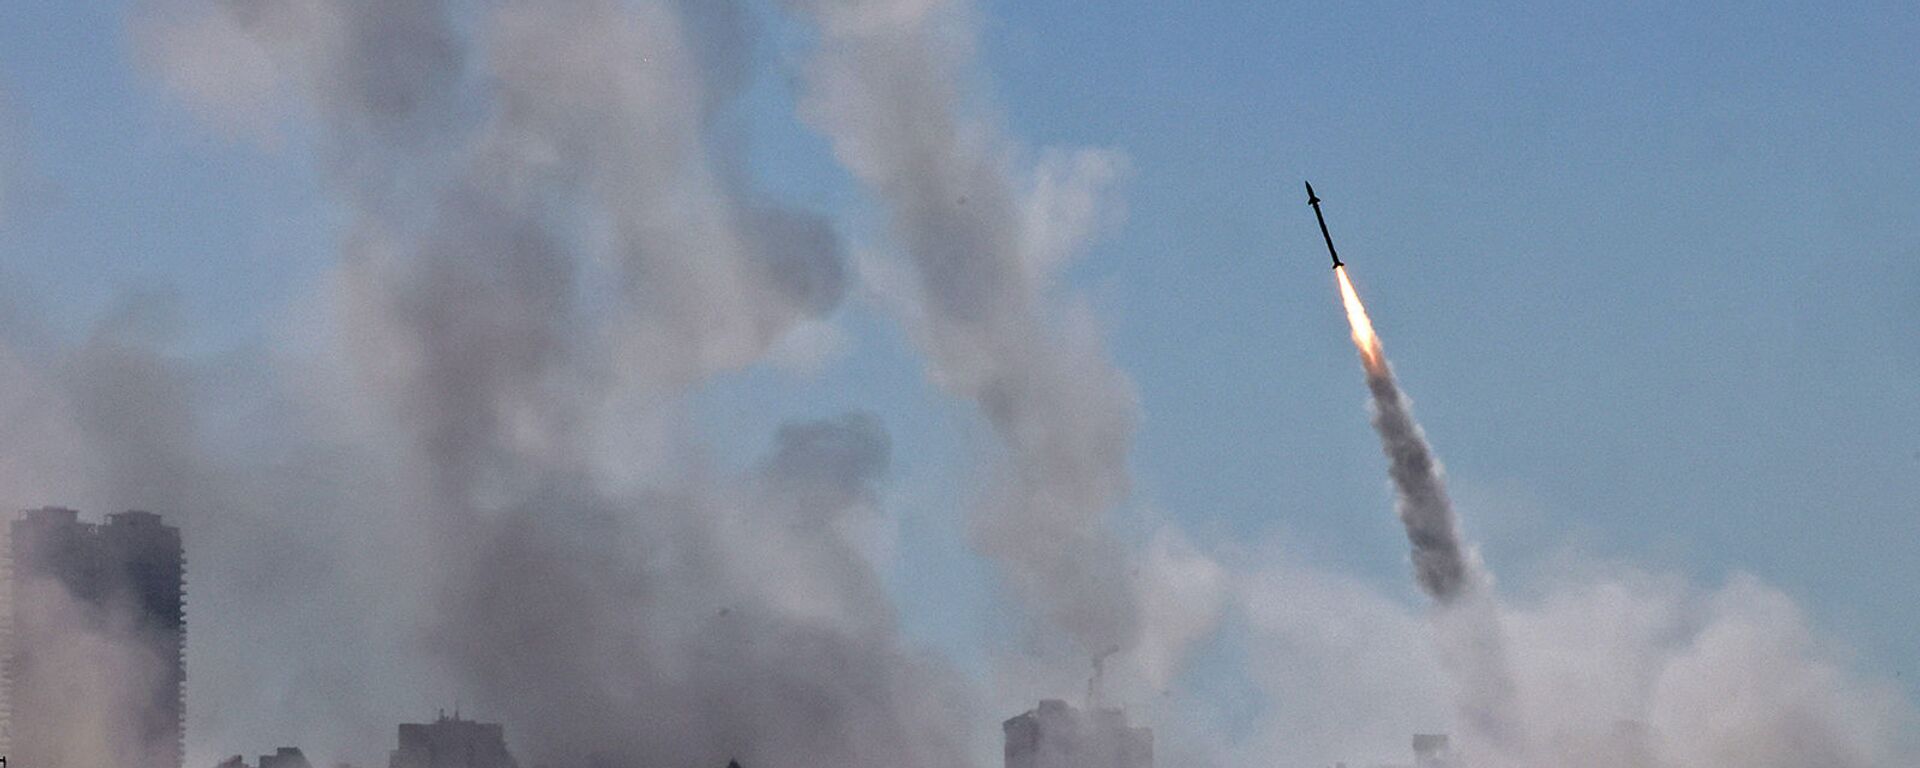 Система противовоздушной обороны Израиля Iron Dome активирована для перехвата ракеты, запущенной из сектора Газа, контролируемого палестинским движением ХАМАС (12 мая 2021). Ашдод - Sputnik Армения, 1920, 13.05.2021